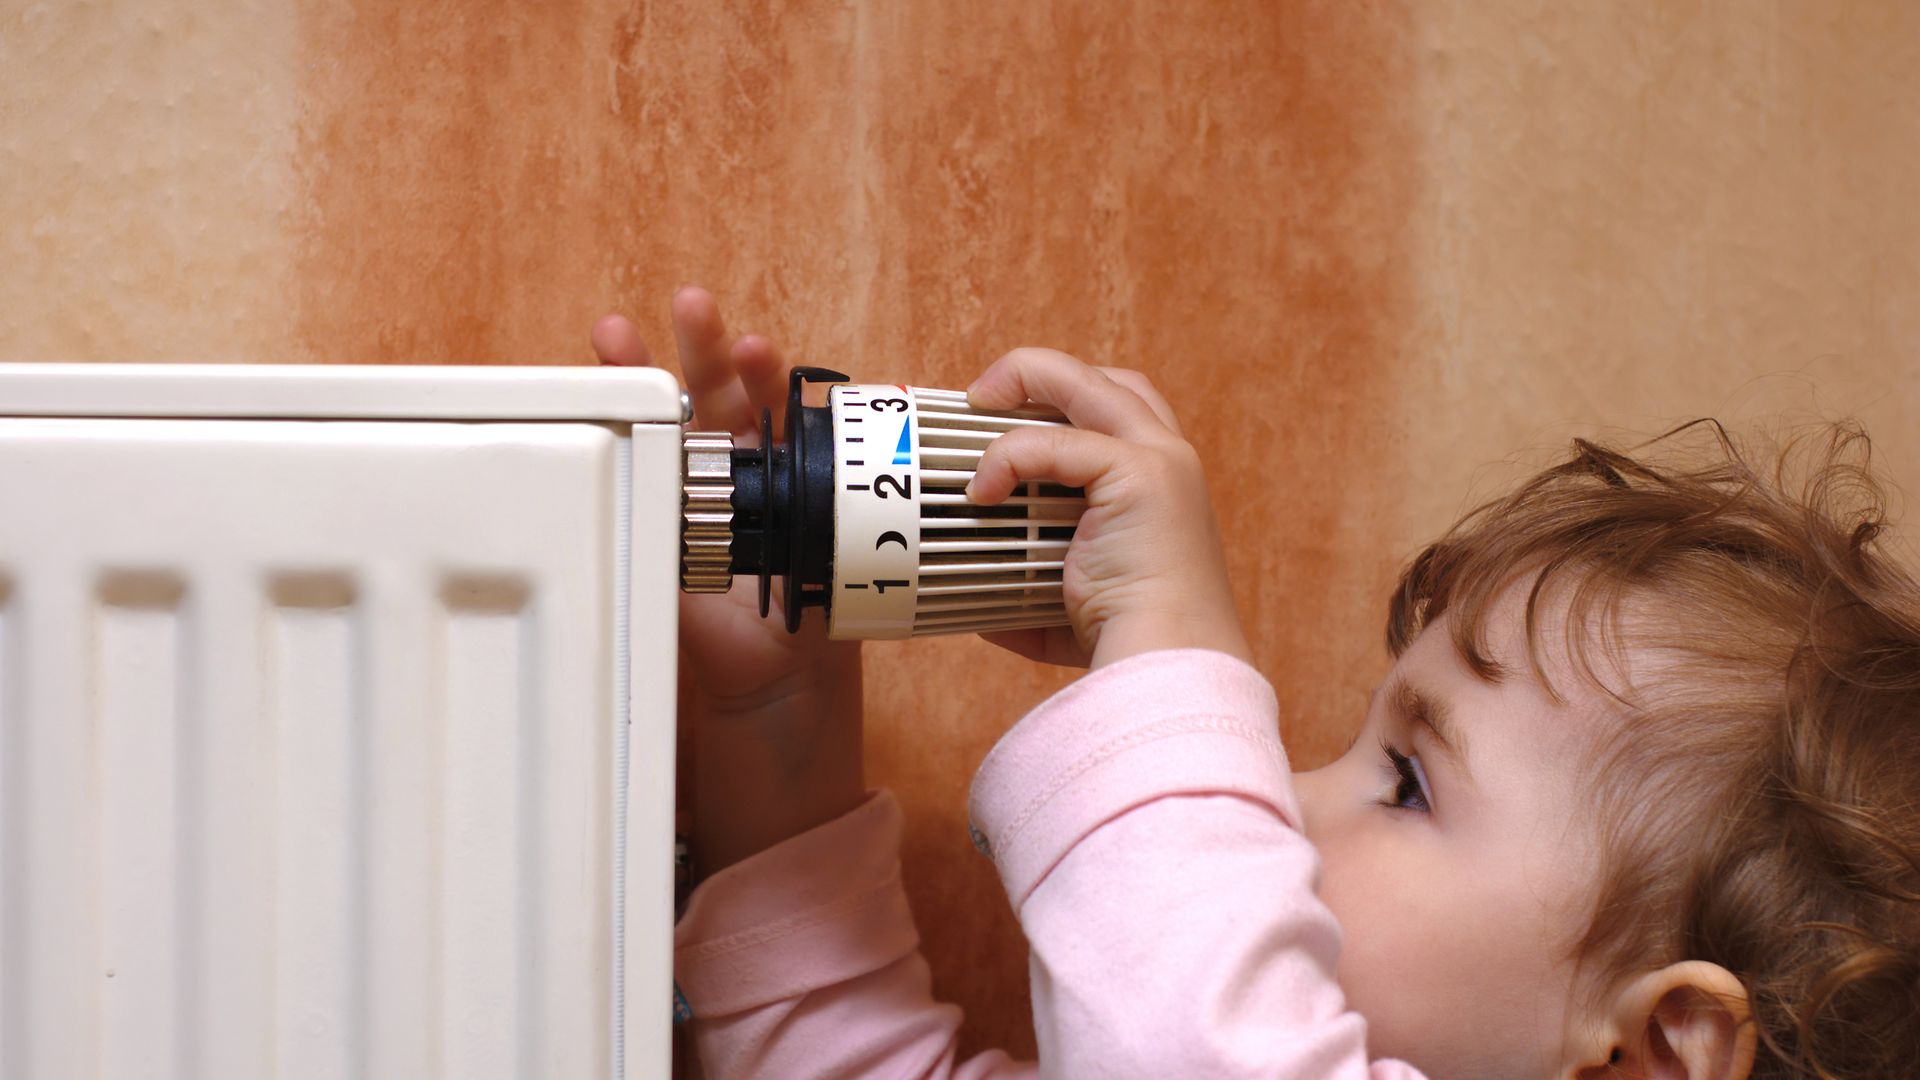 Kleines Kind dreht am Thermostat einer Heizung